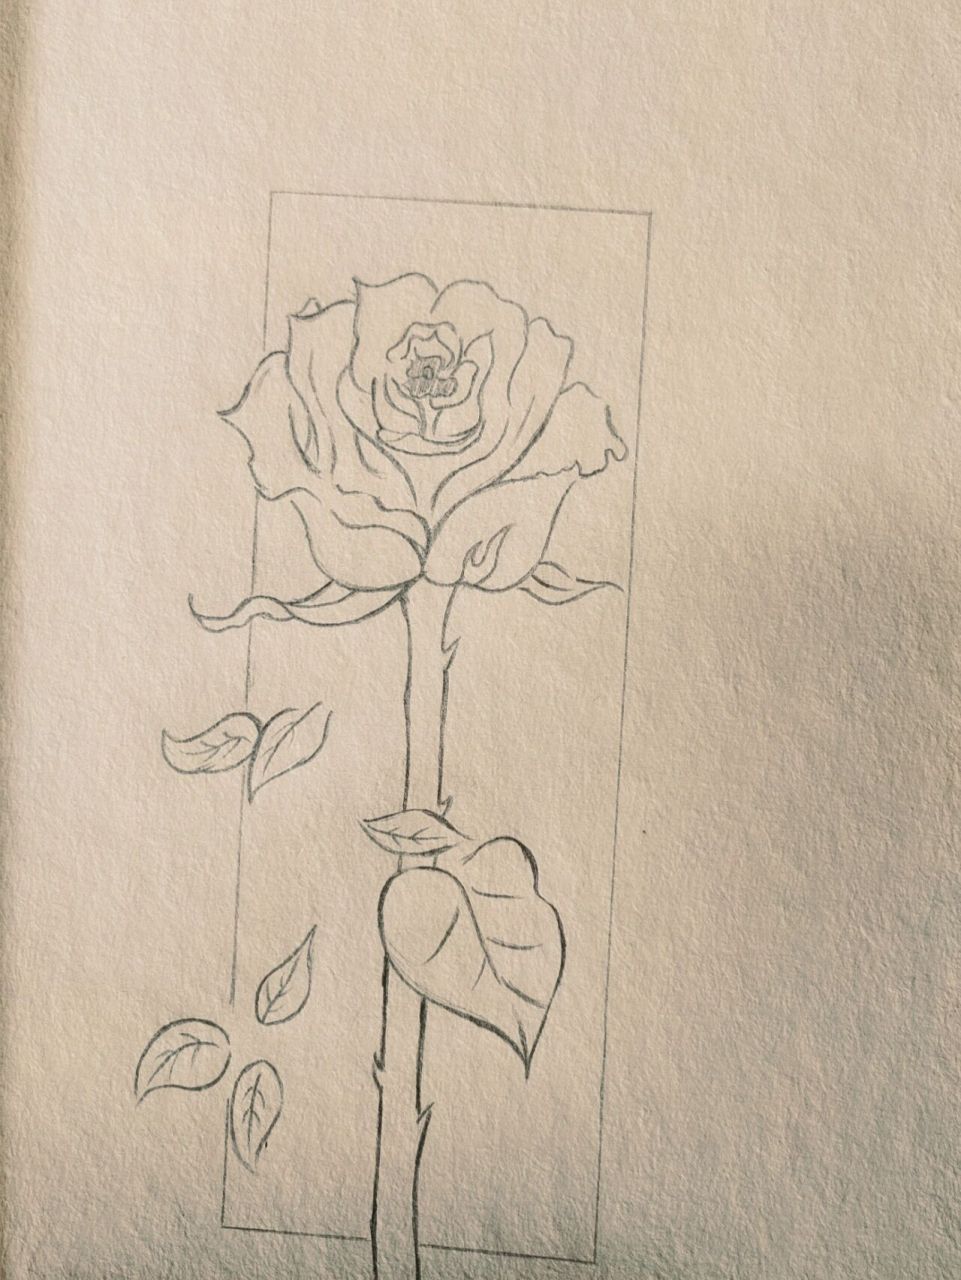 玫瑰花简笔画 附过程 最近很累 送自己一朵花吧